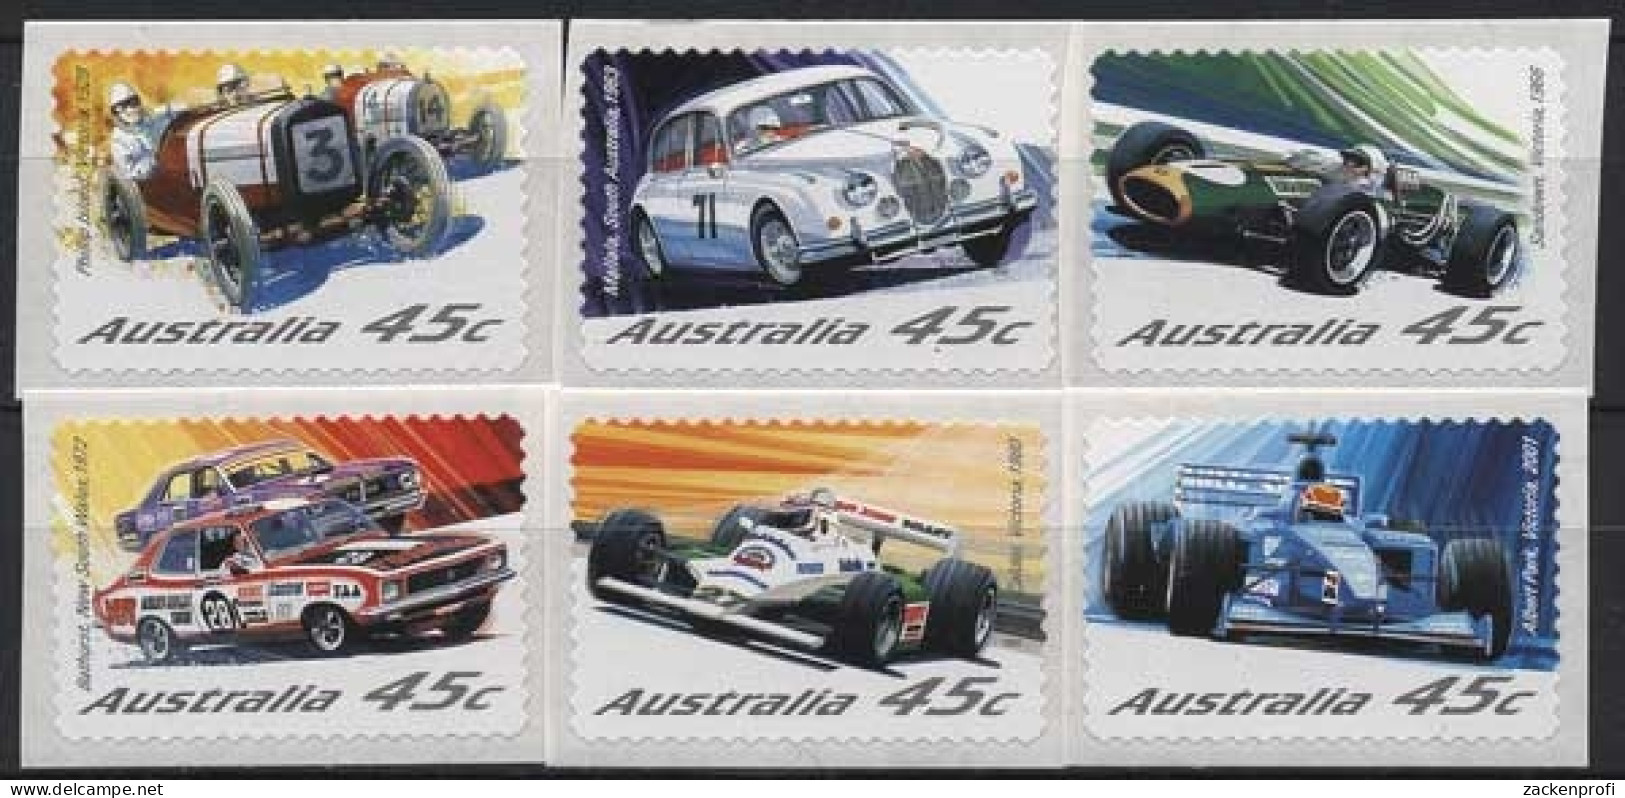 Australien 2002 Automobilrennsport 2119/24 Postfrisch - Ungebraucht